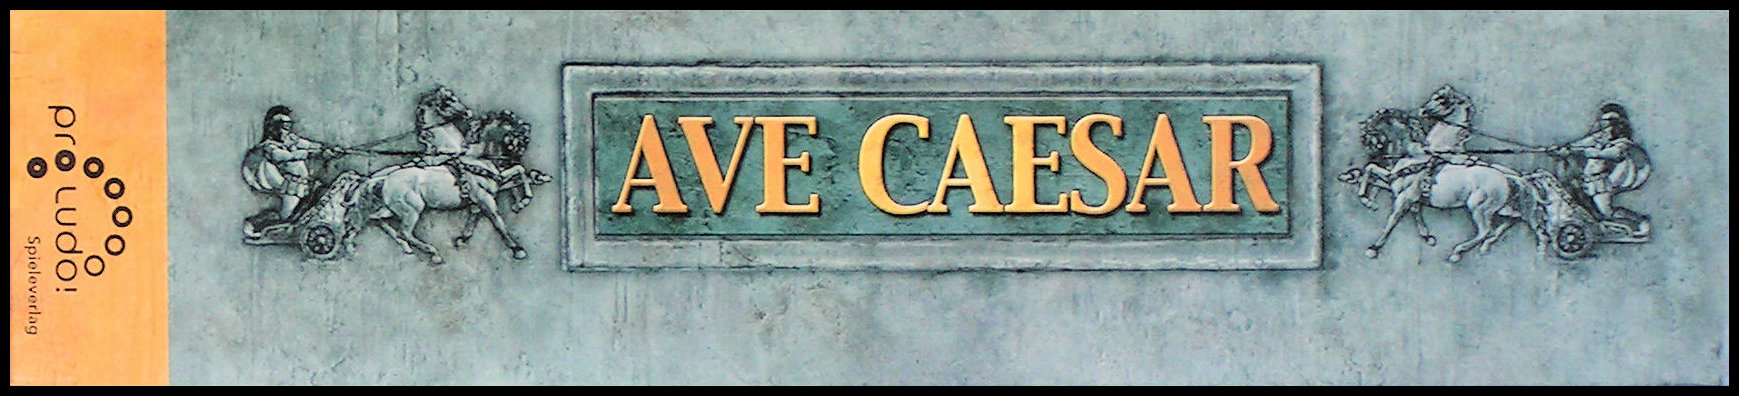 Ave Caesar - Box Side 1